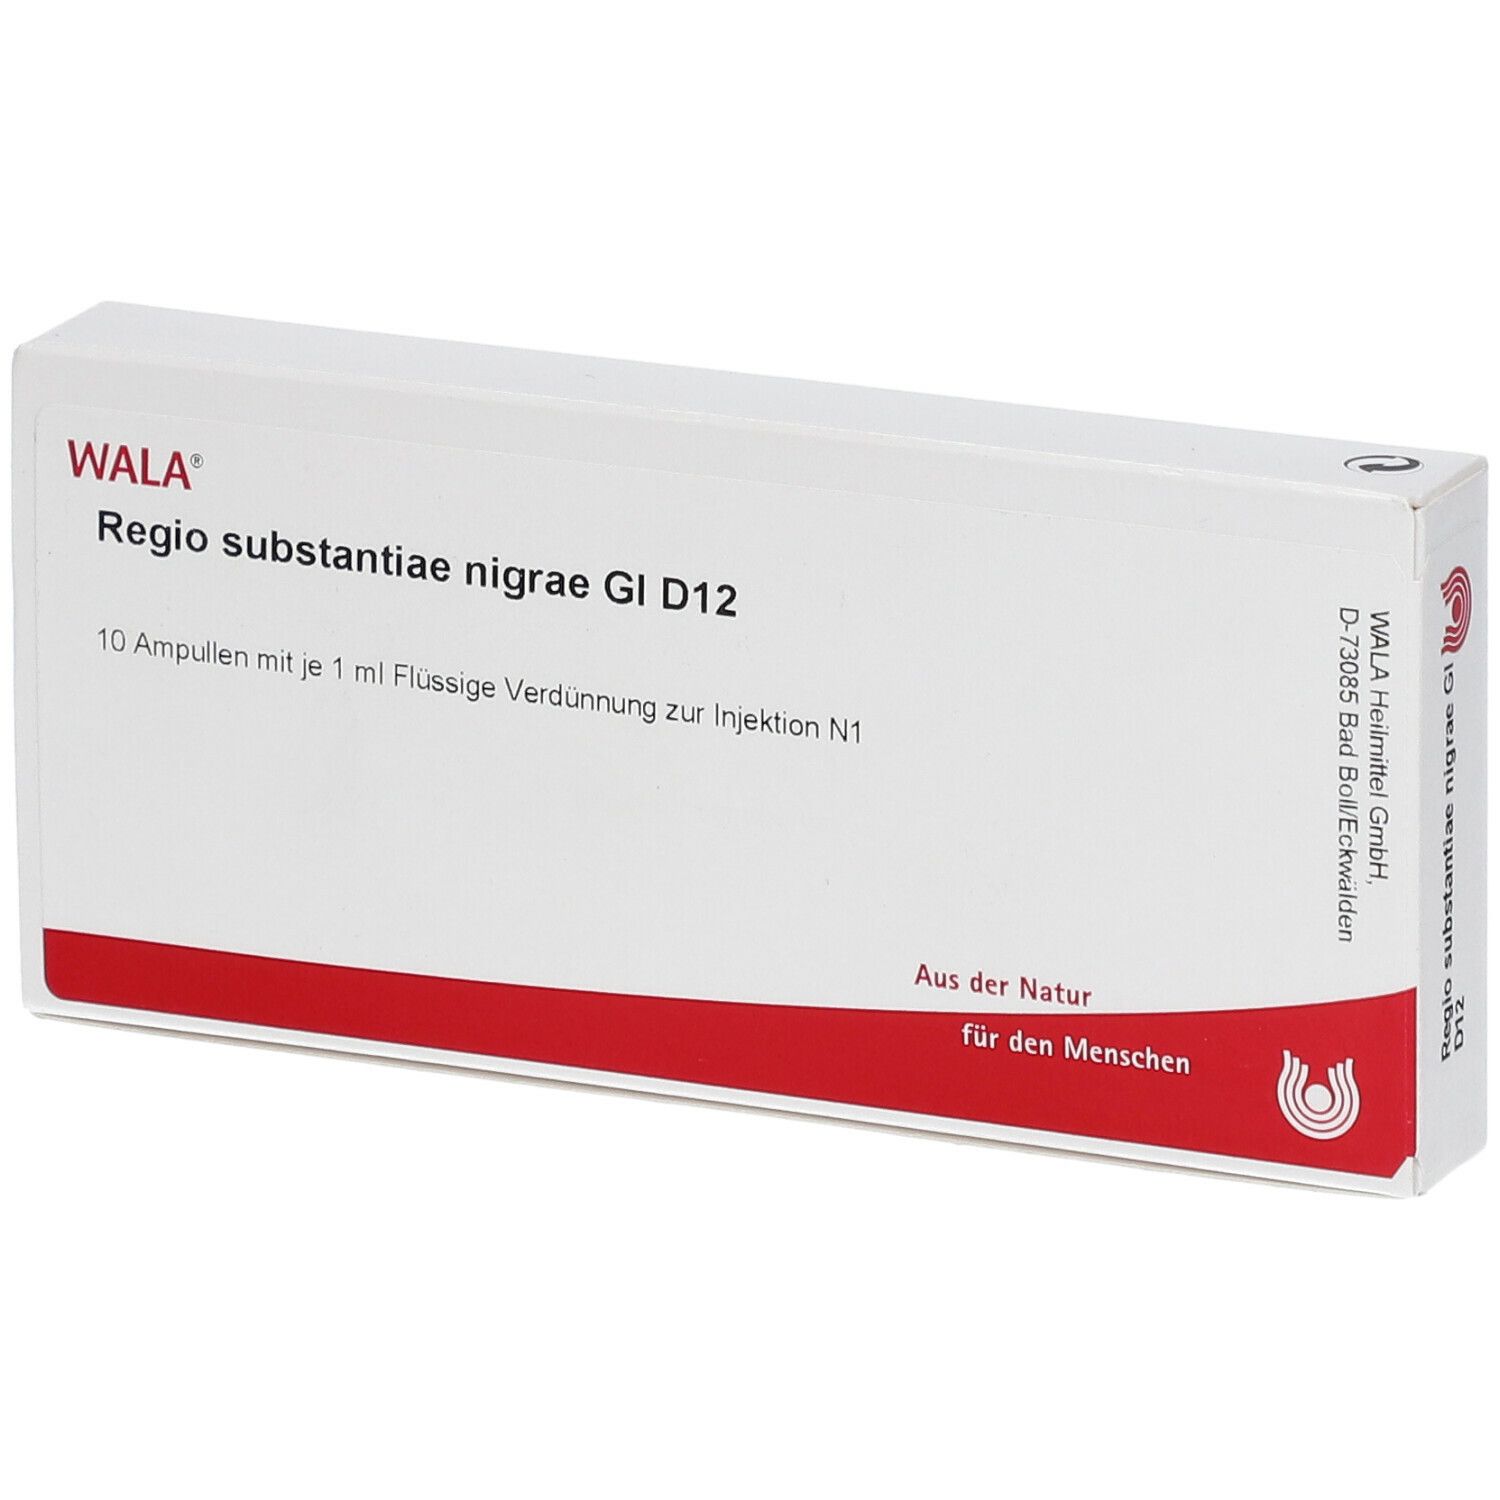 WALA® Regio substantiae nigrae Gl D 12